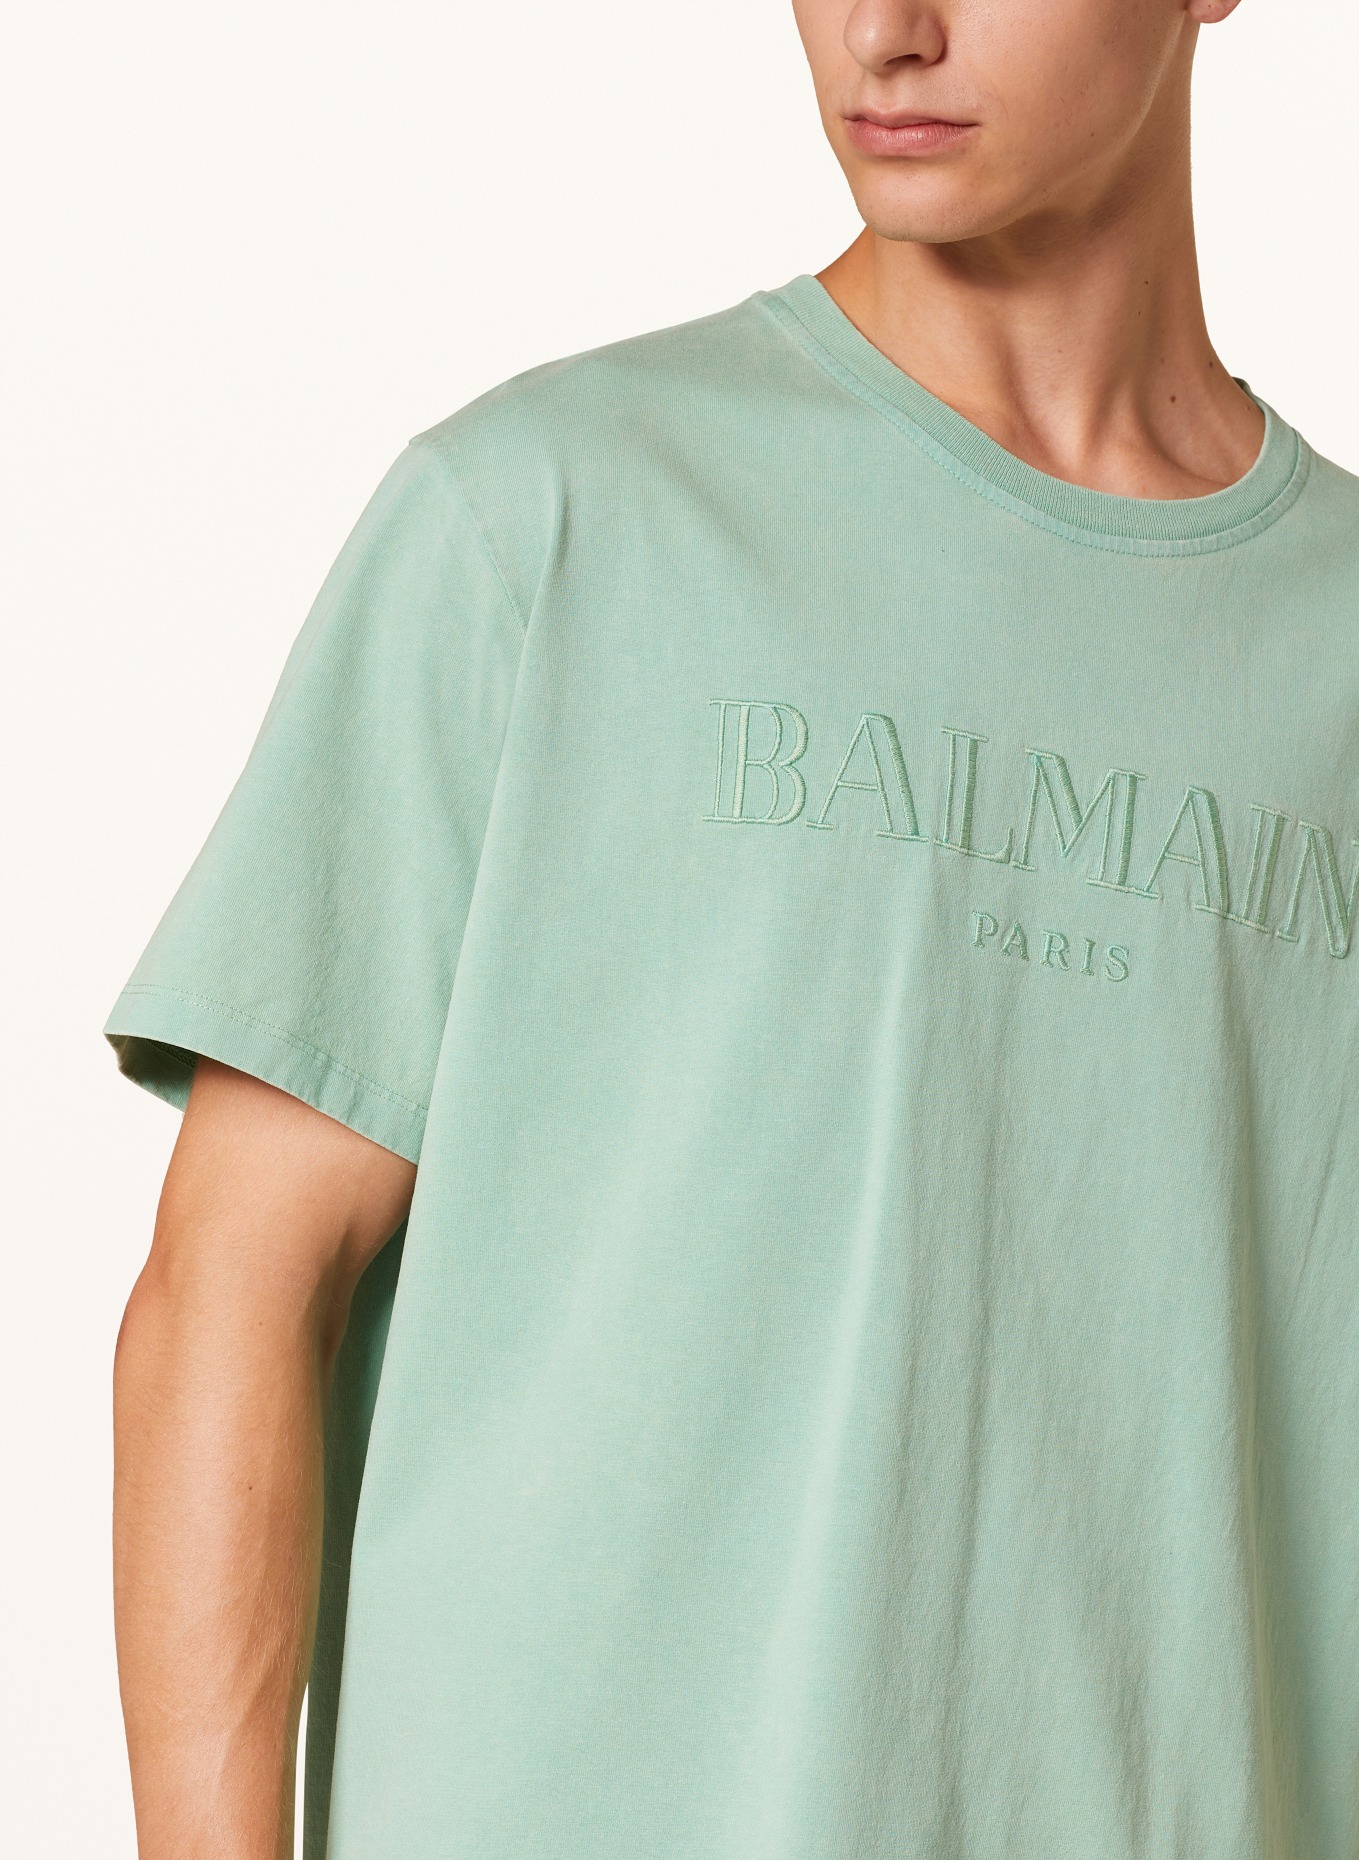 BALMAIN T-shirt, Color: MINT (Image 4)